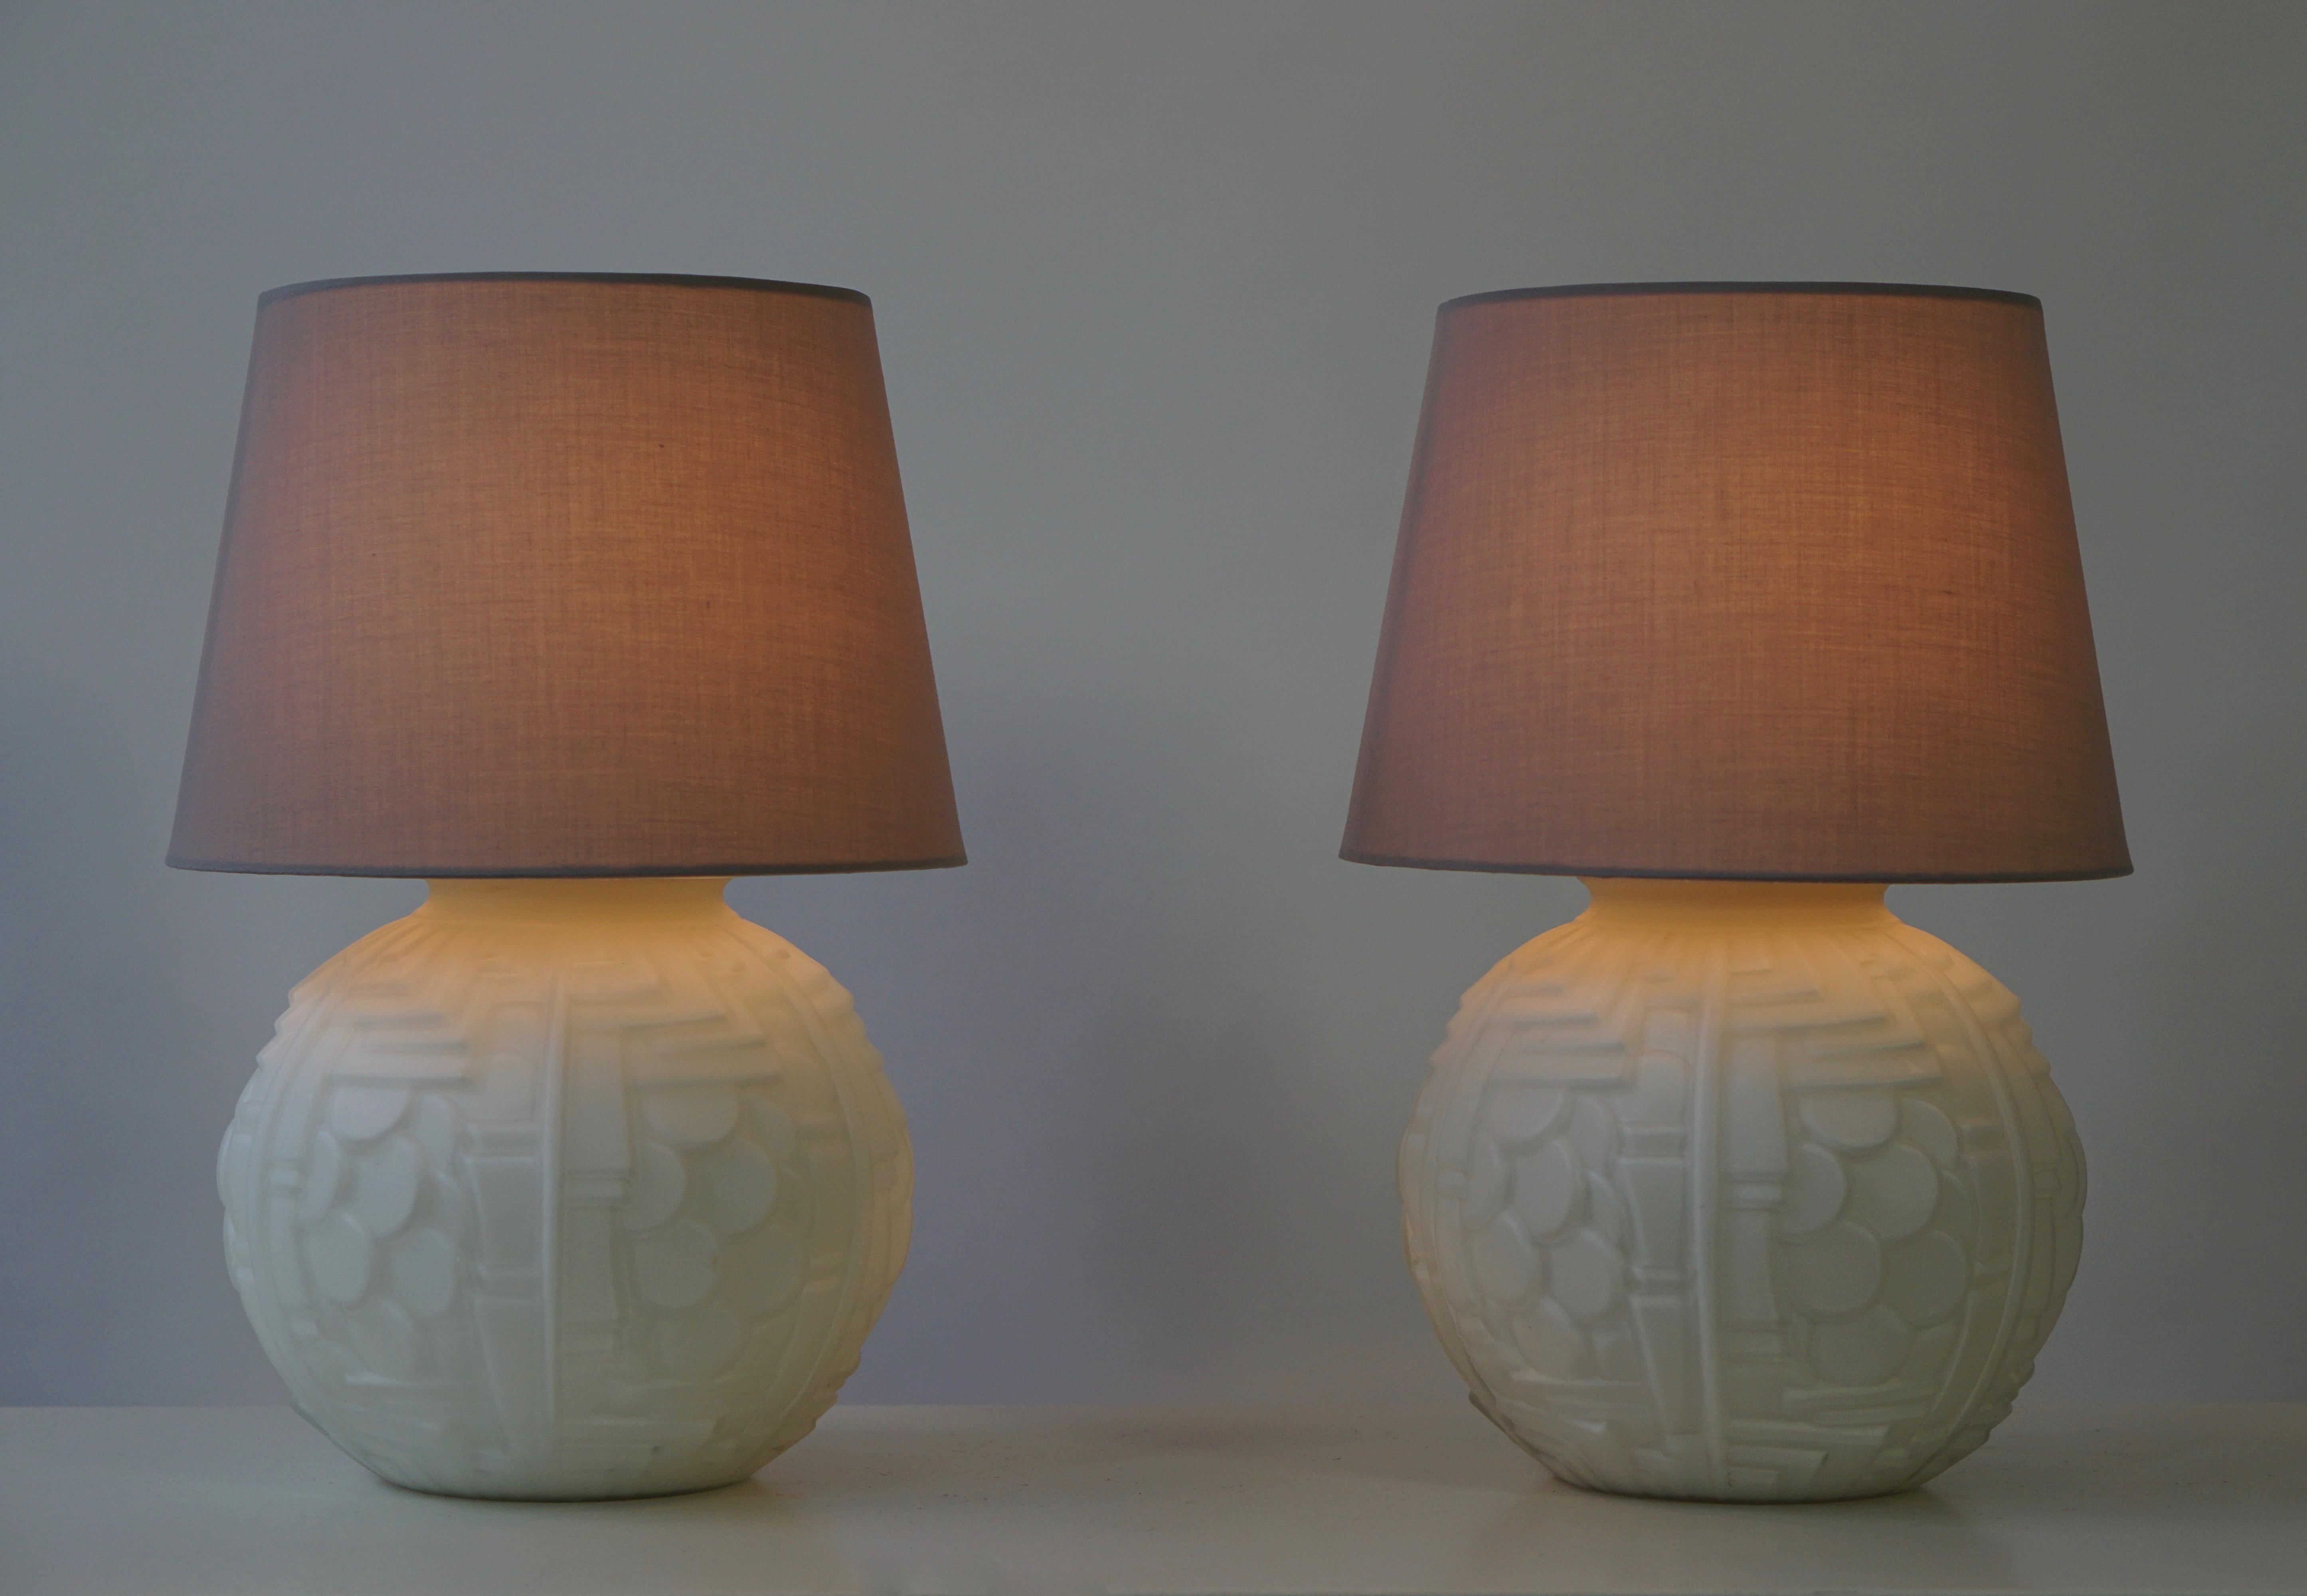 Deux lampes de table italiennes en verre de Murano.
Diamètre de la base 20 cm.
Diamètre de l'abat-jour 25 cm.
Hauteur 36 cm.